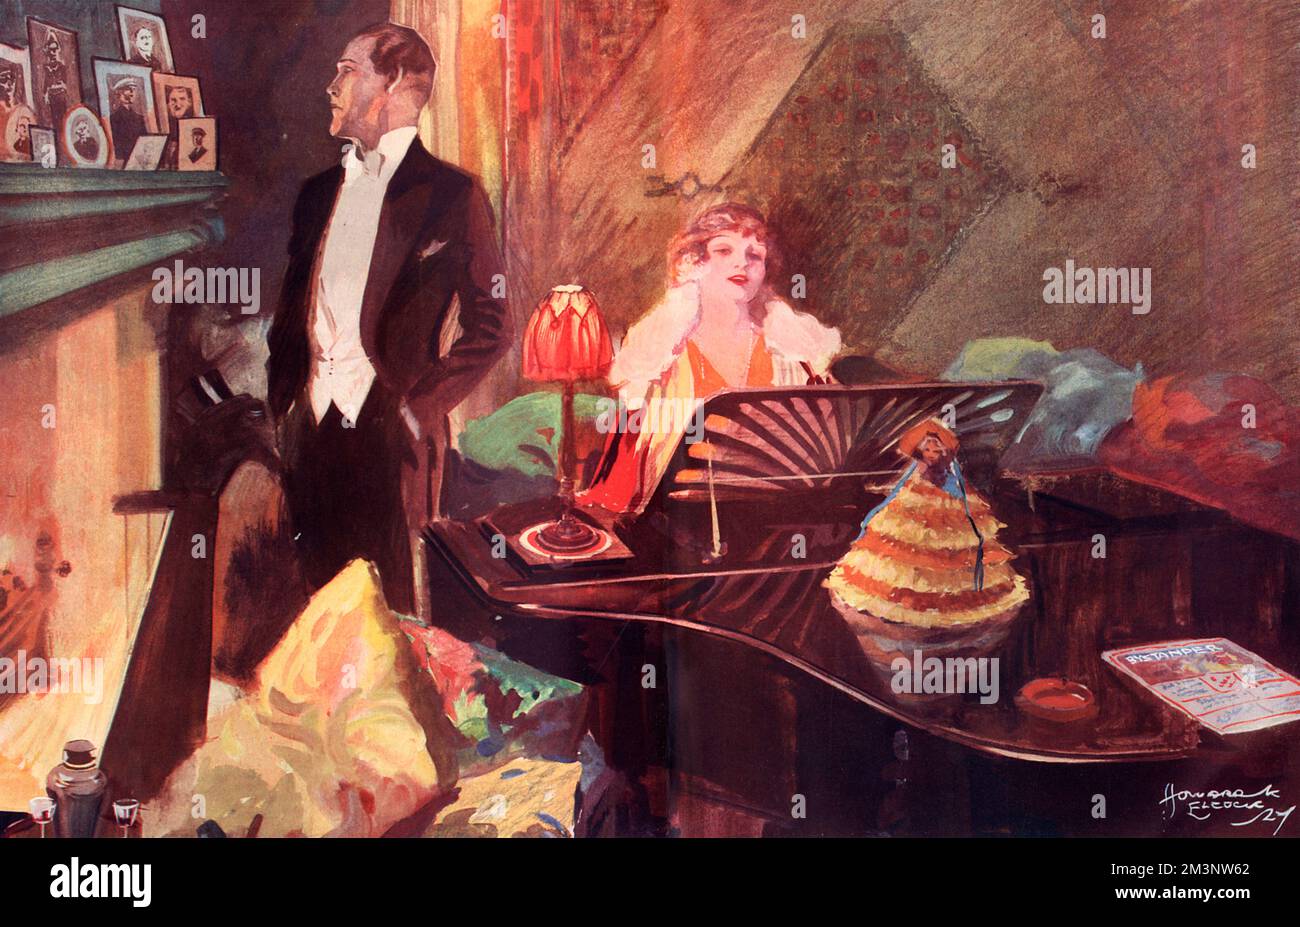 Une dame en robe de soirée joue un piano à queue, tandis qu'un gentleman en cravate blanche contemple un groupe de portraits encadrés sur la pièce de la manille. Notez la copie du spectateur sur le piano à queue. Date: 1927 Banque D'Images